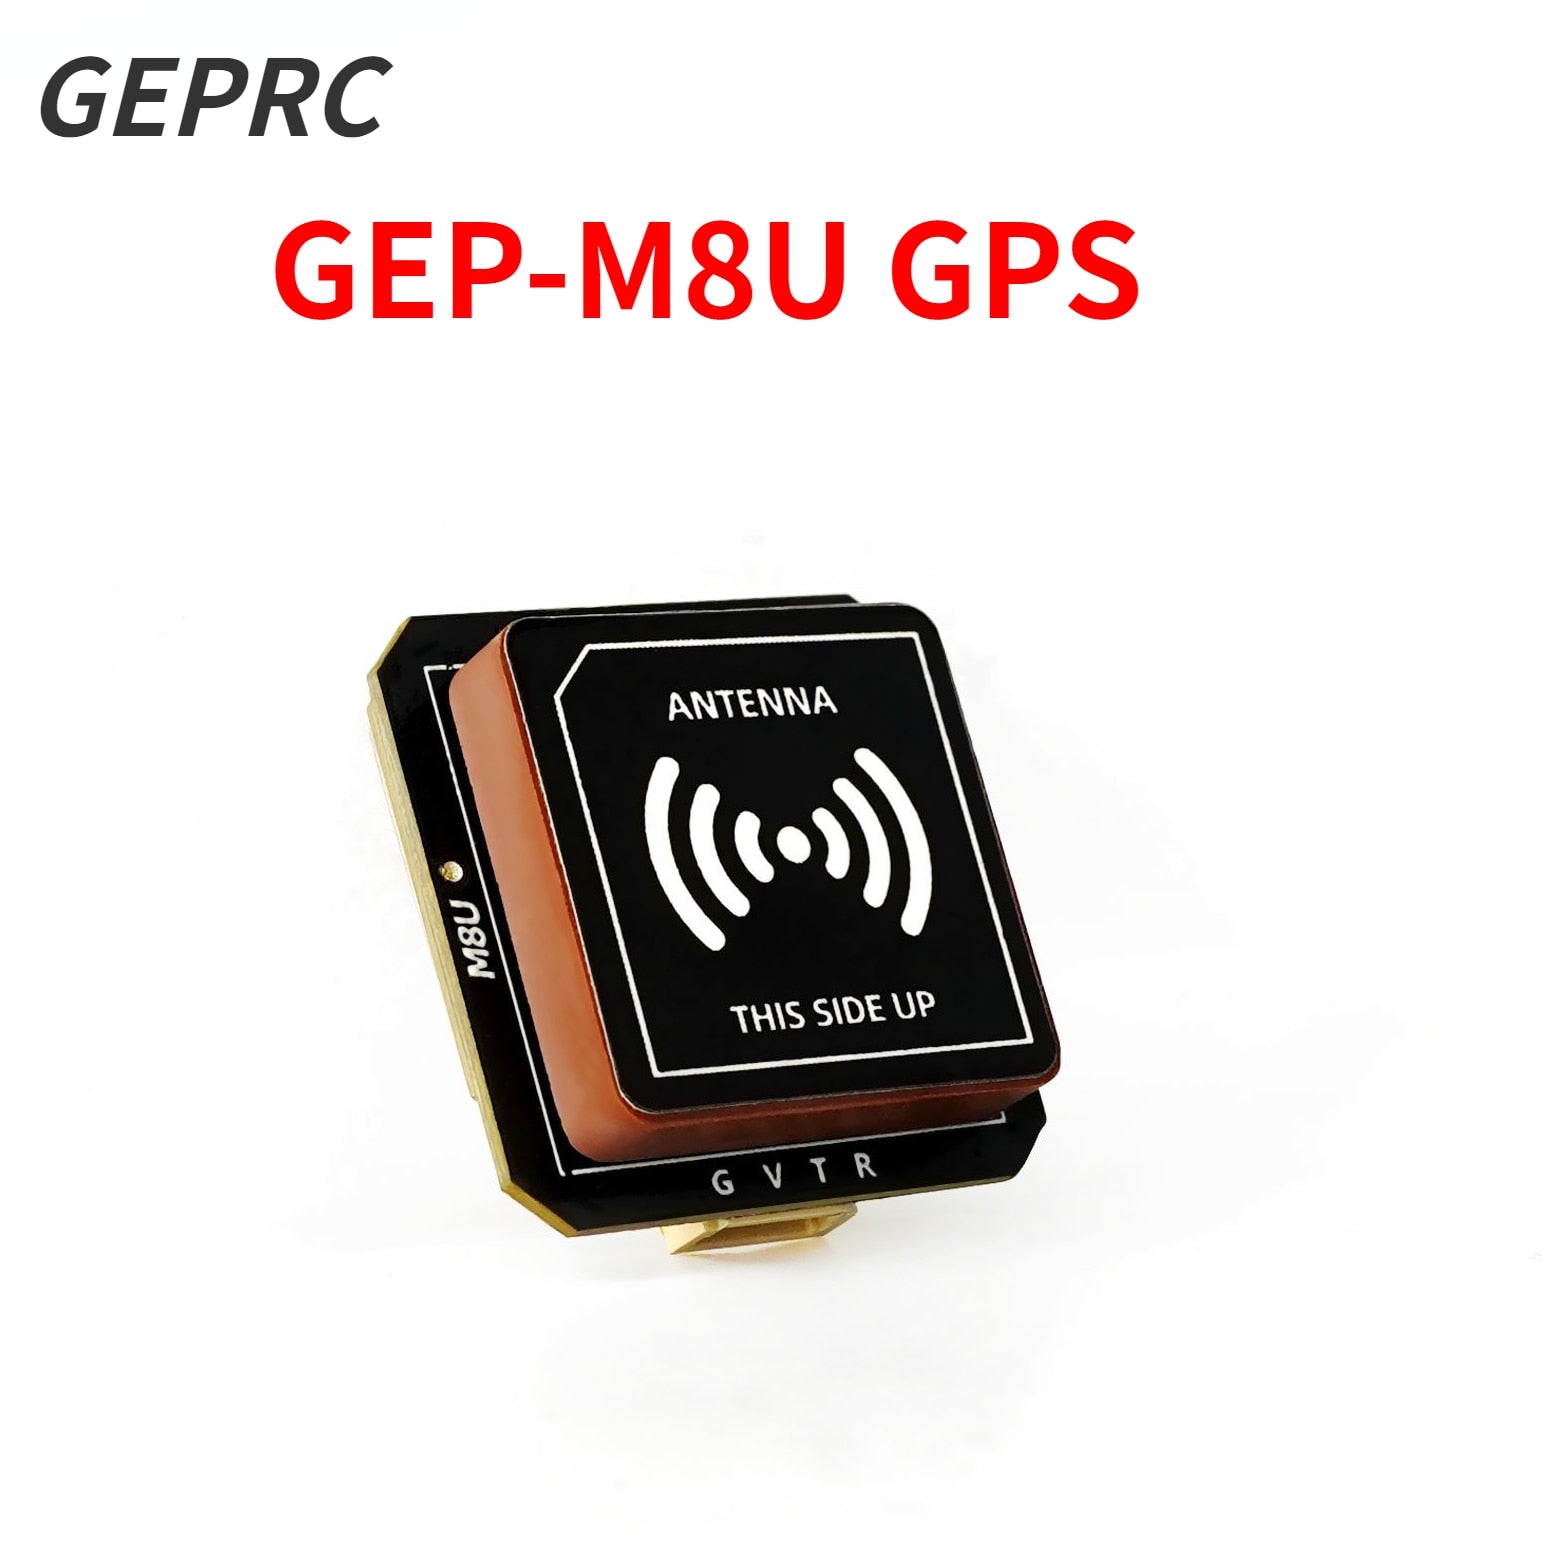 |14:10#GEP-M8U GPS-BDS|14:200013900#GEP-M8U GPS-GLONASS|3256805005050727-GEP-M8U GPS-BDS|3256805005050727-GEP-M8U GPS-GLONASS